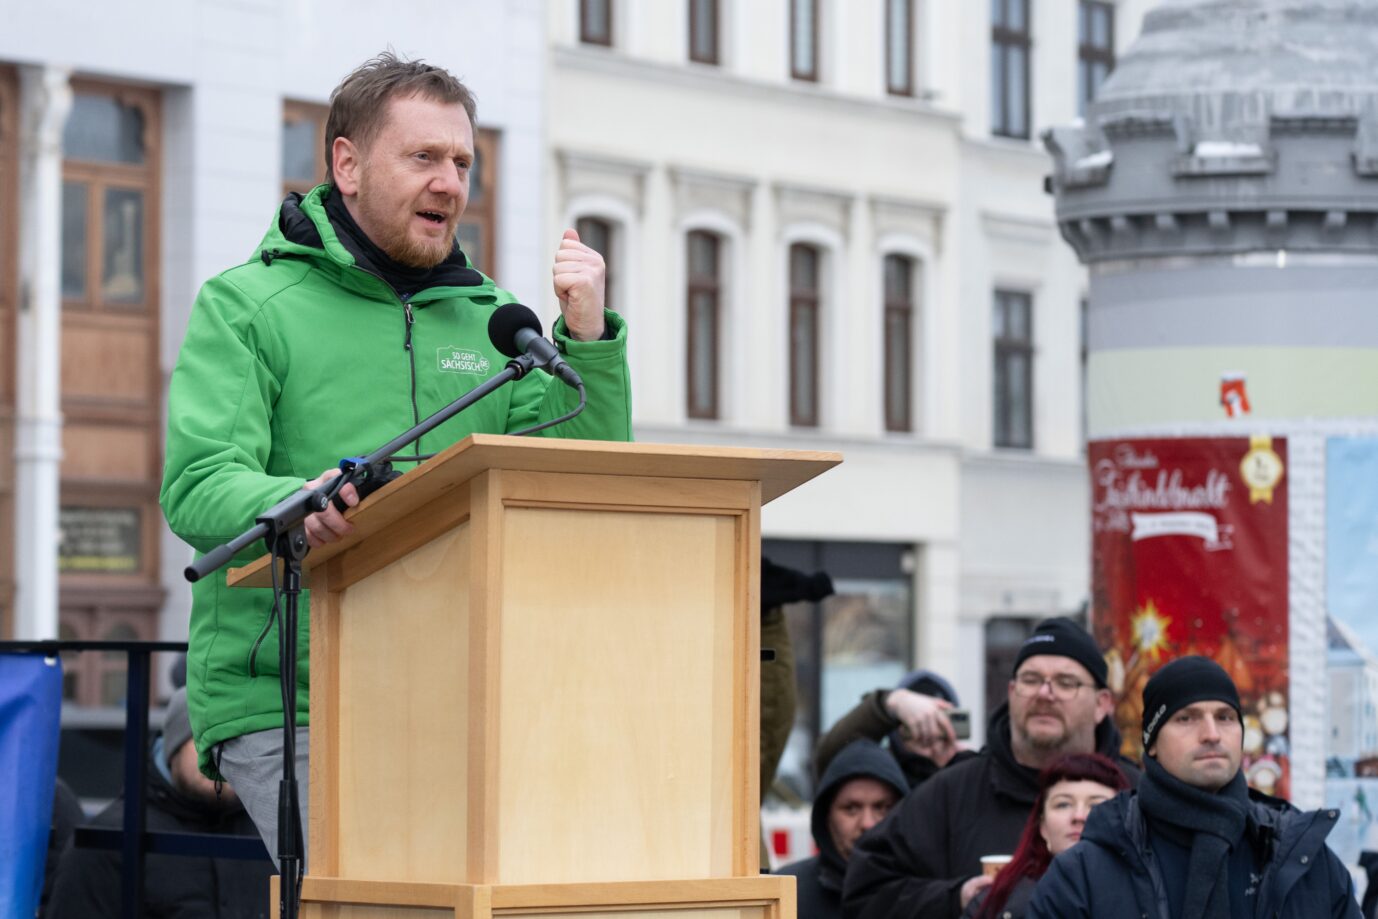 Michael Kretschmer (CDU), Ministerpräsident von Sachsen, spricht auf einer Demonstrationen gegen Rechtsextremismus auf dem Marienplatz. Mit den bundesweiten Demonstrationen soll ein Zeichen des Wiederstands gegen rechtsextreme Umtriebe gesetzt werden.